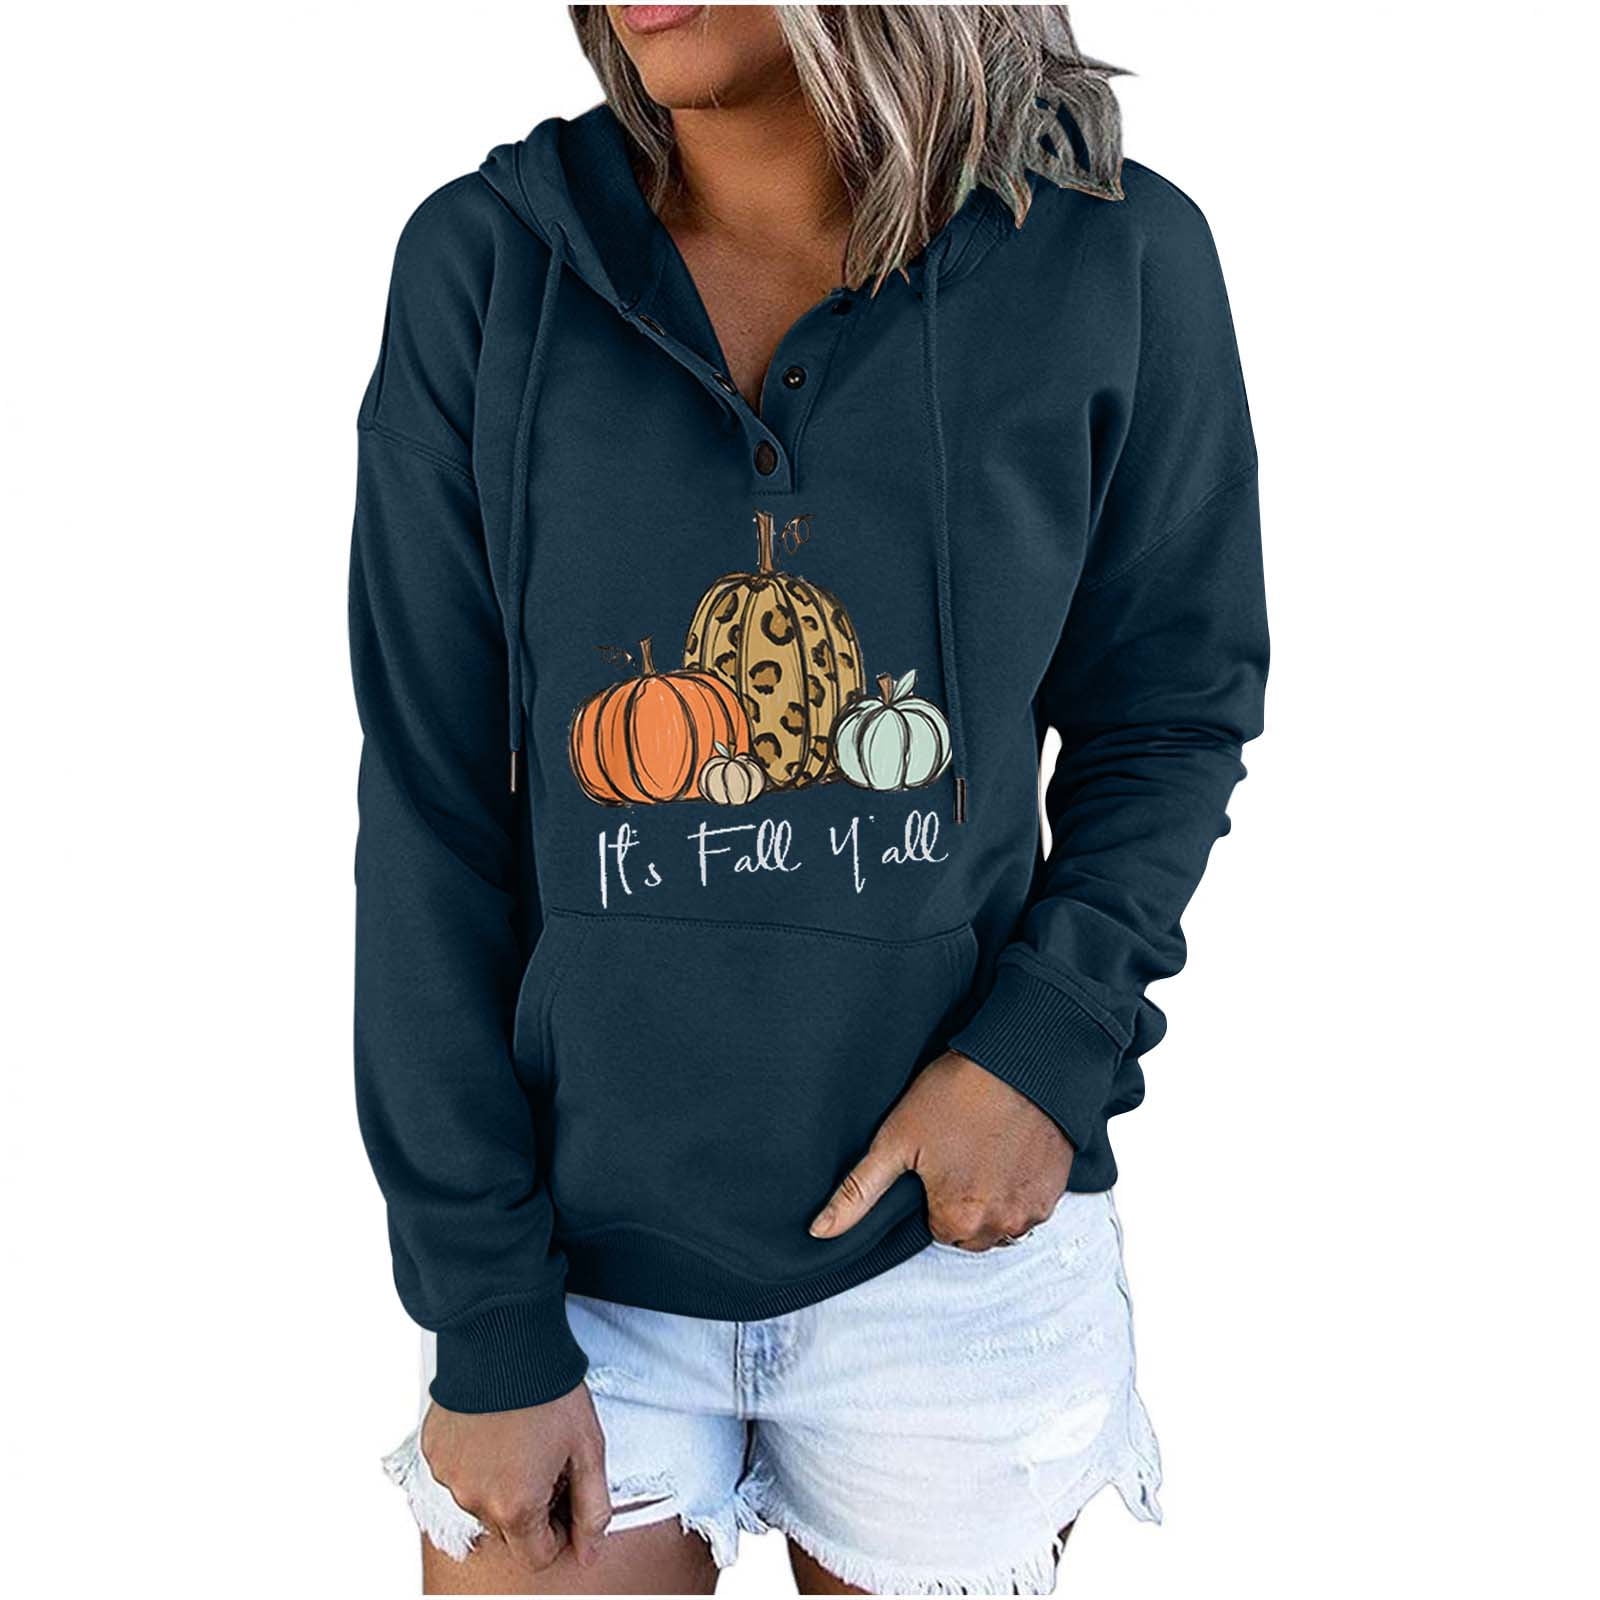  Oversized Sweatshirt For Women Long Sleeve Los Angeles Graphic  Hoodie Sweatshirt Crewneck Cute Hoodie Sweater Teen Girls : Clothing, Shoes